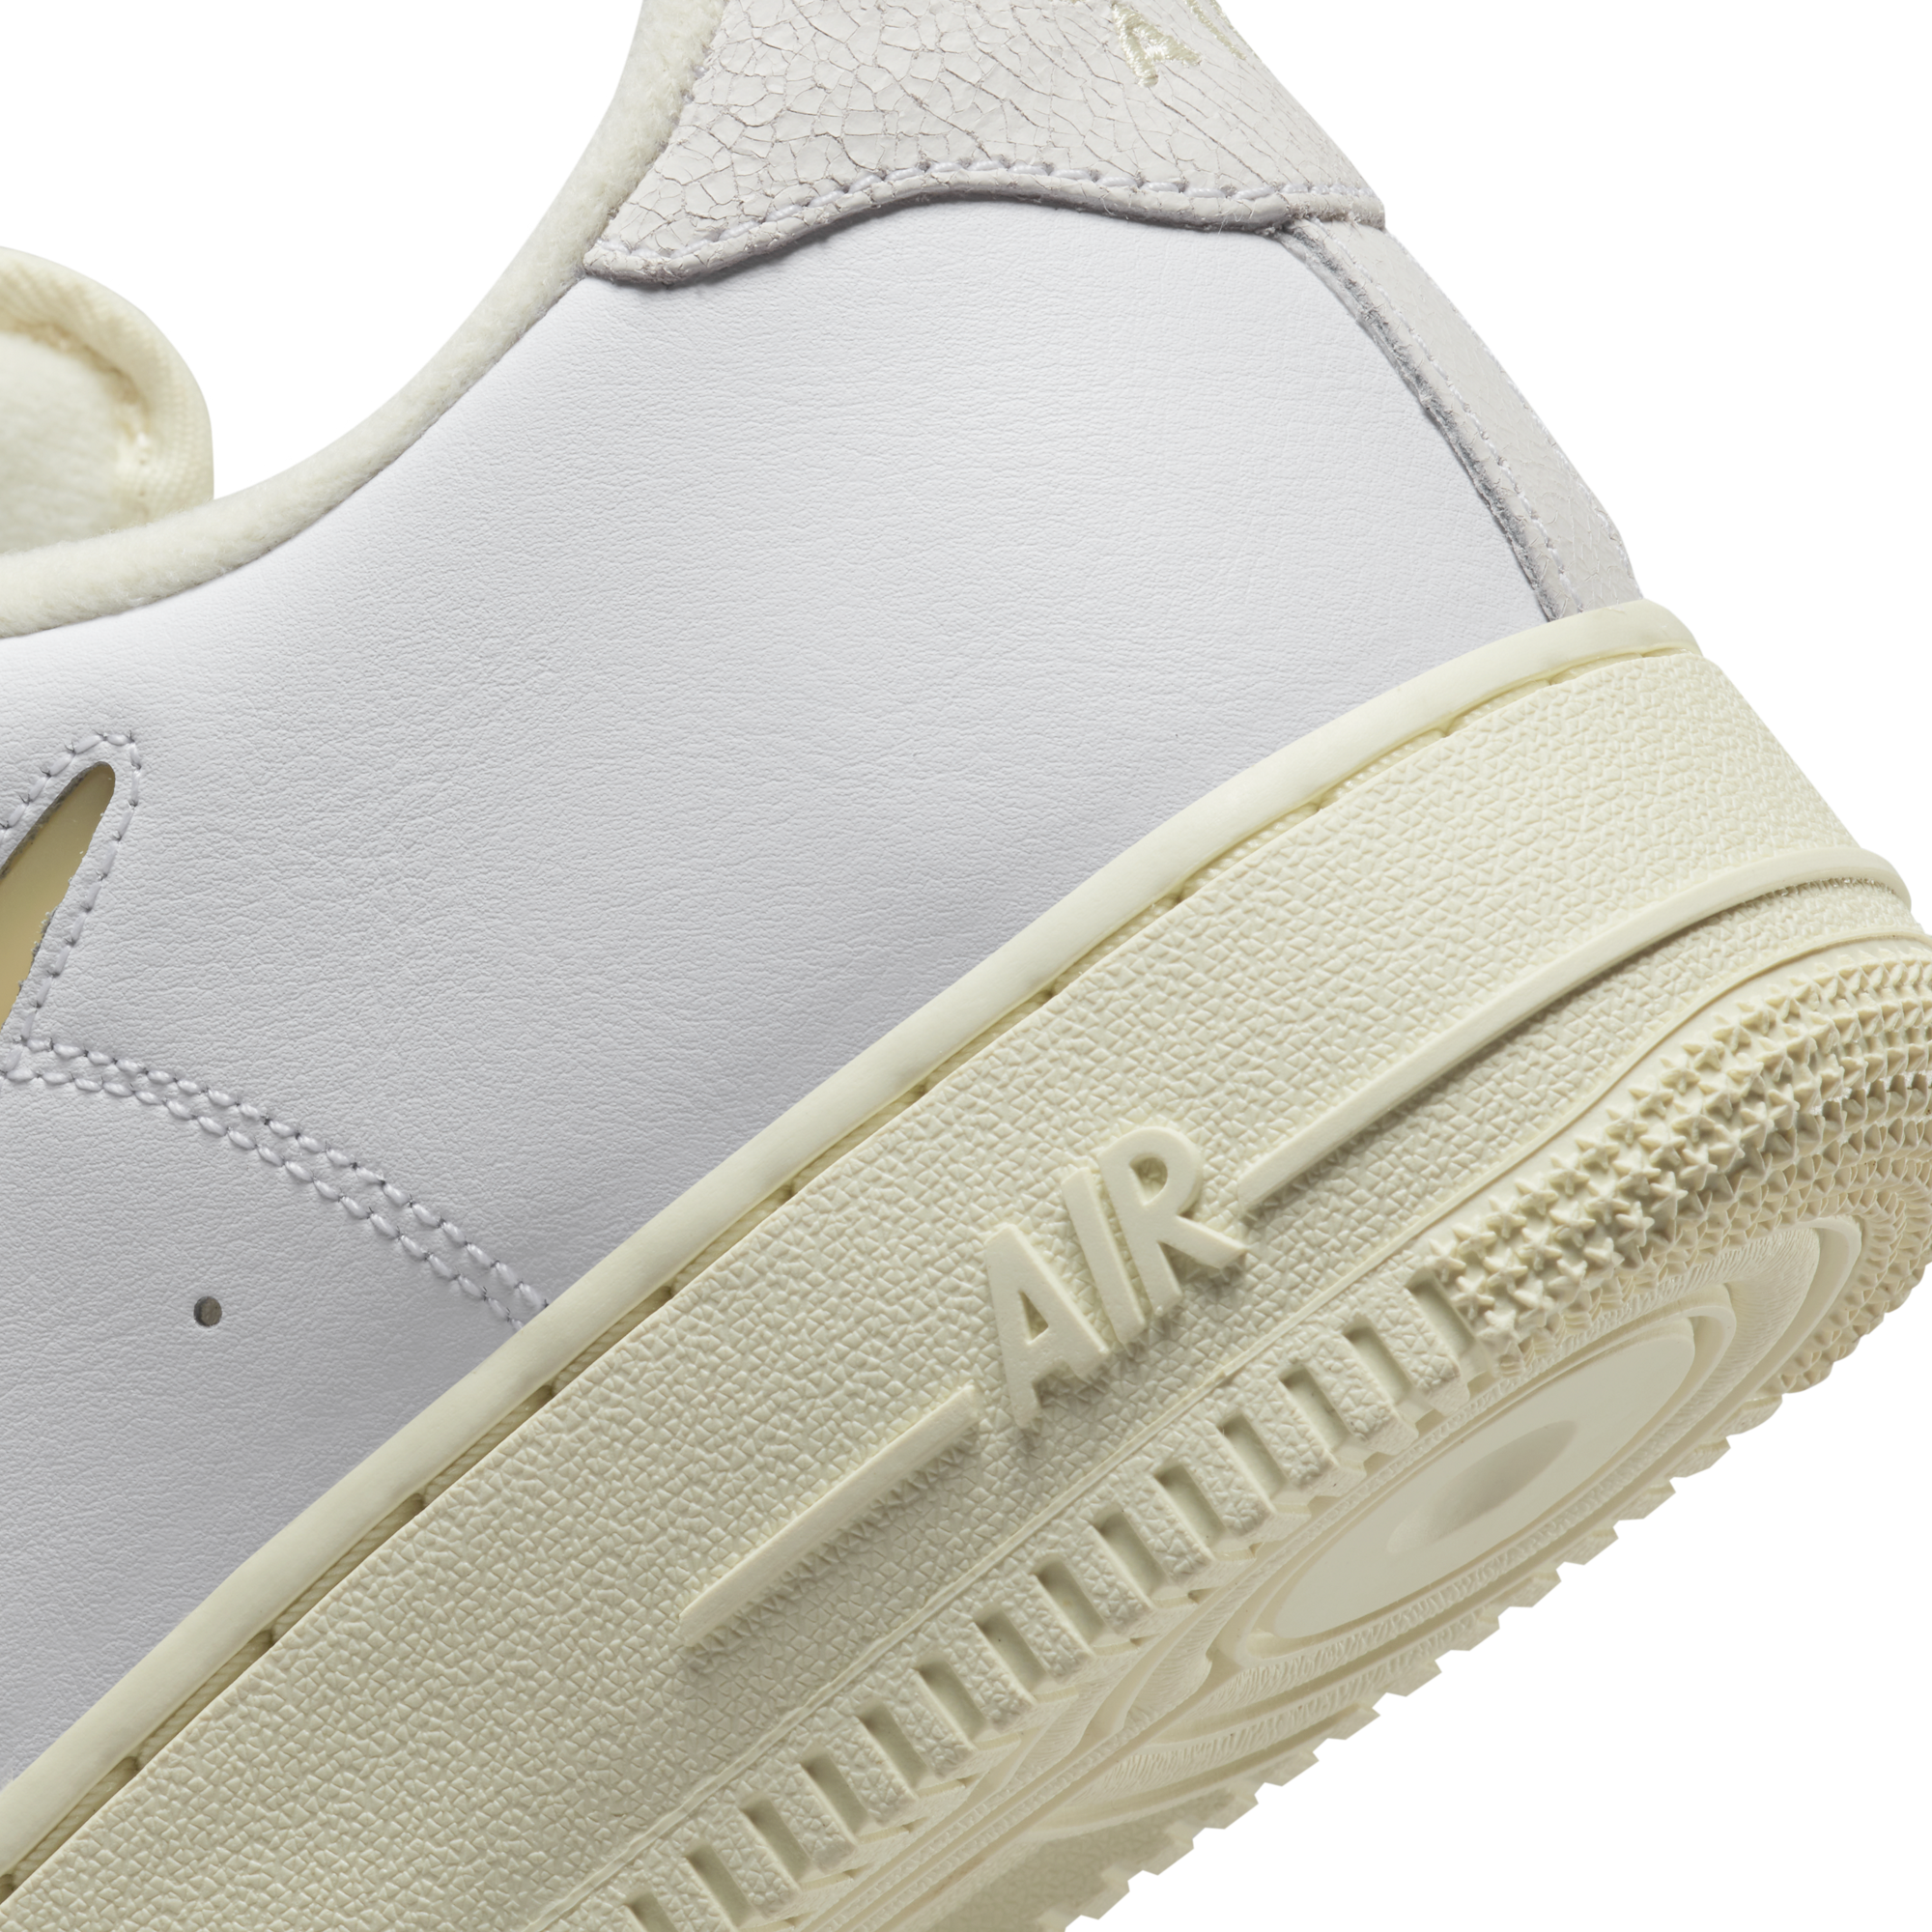 Nike Air Force 1 07 LX 'White'